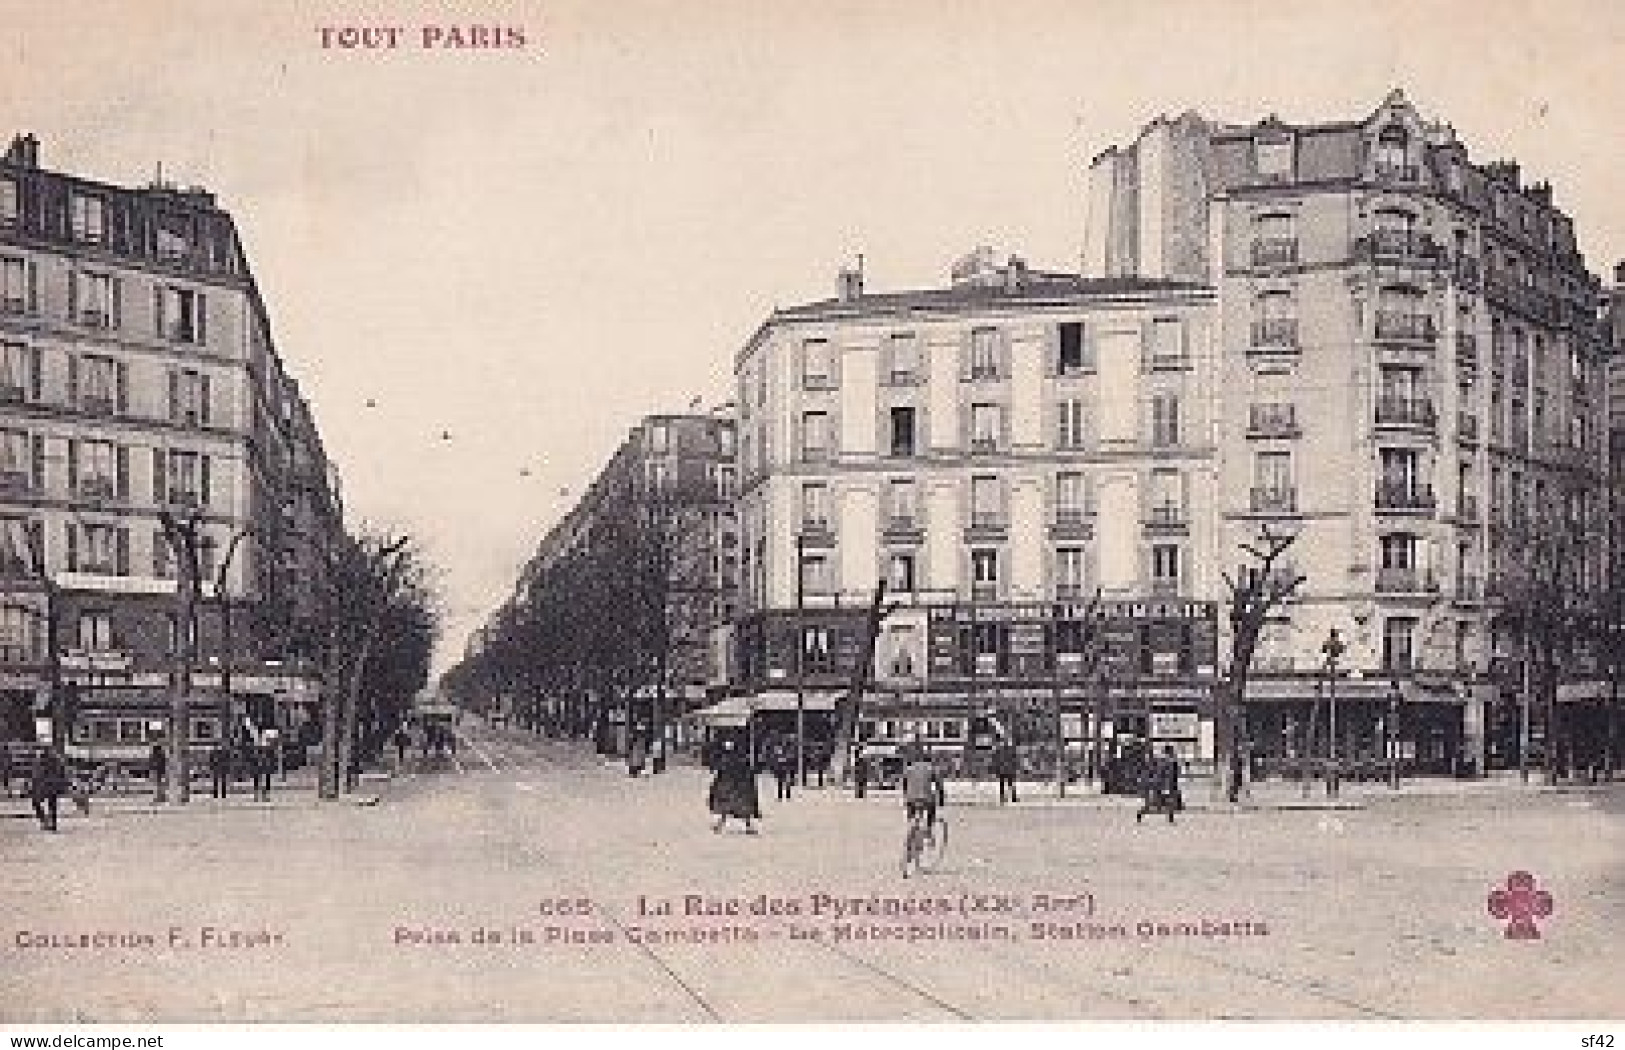 TOUT PARIS      LA RUE DES PYRENEES. PRISE DE LA PLACE GAMBETTA.  LE METRO STATION GAMBETTA - Paris (20)